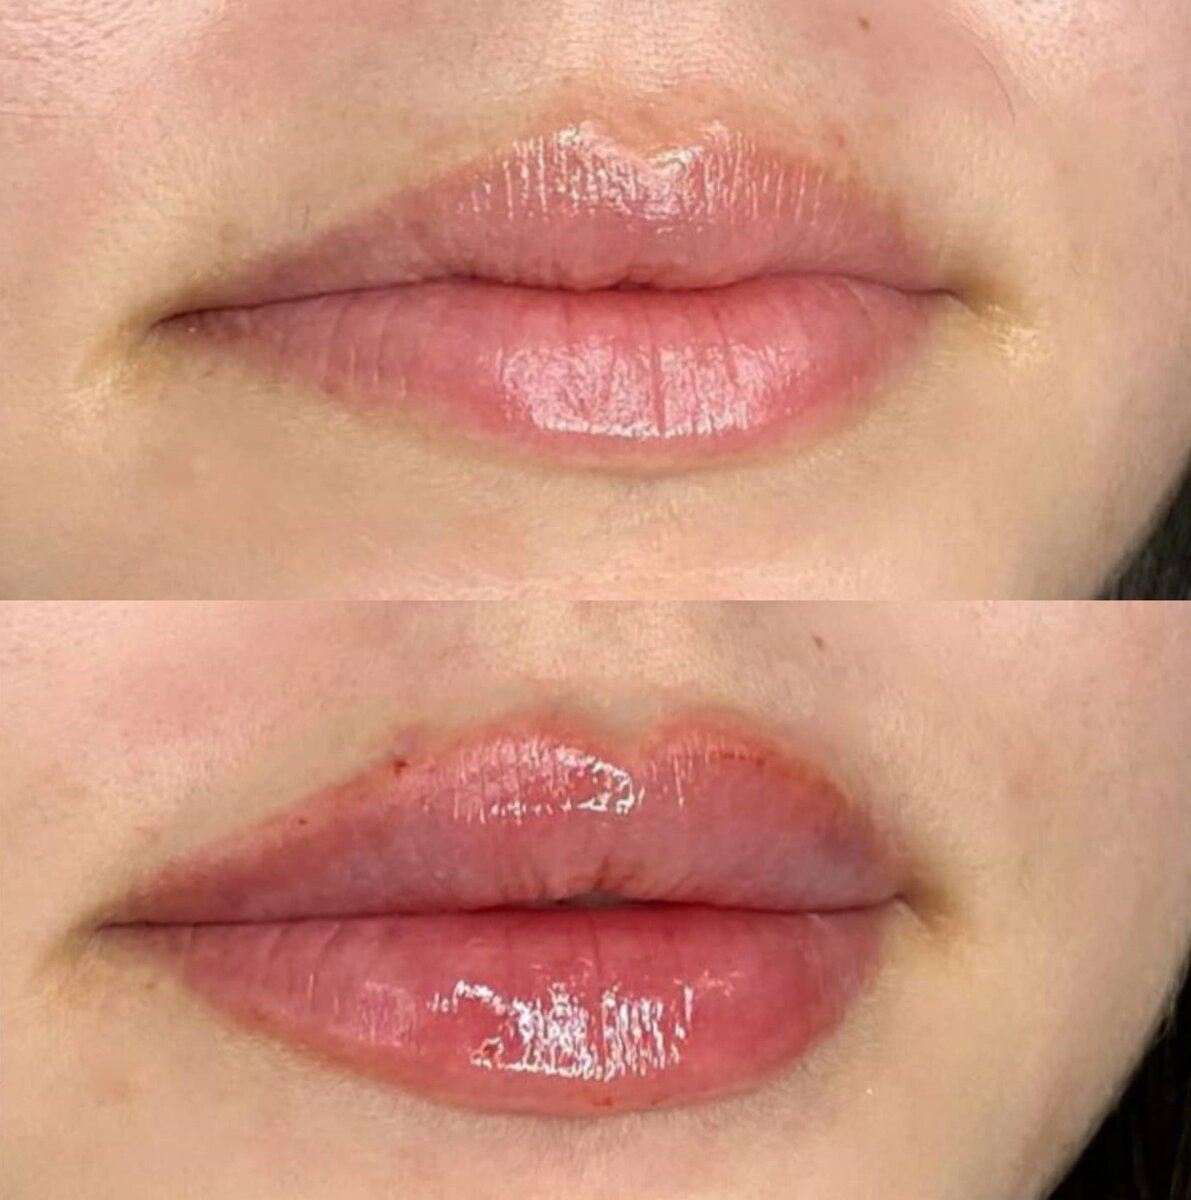 נטורלוק - עיצוב שפתיים בחומצה היאלורונית